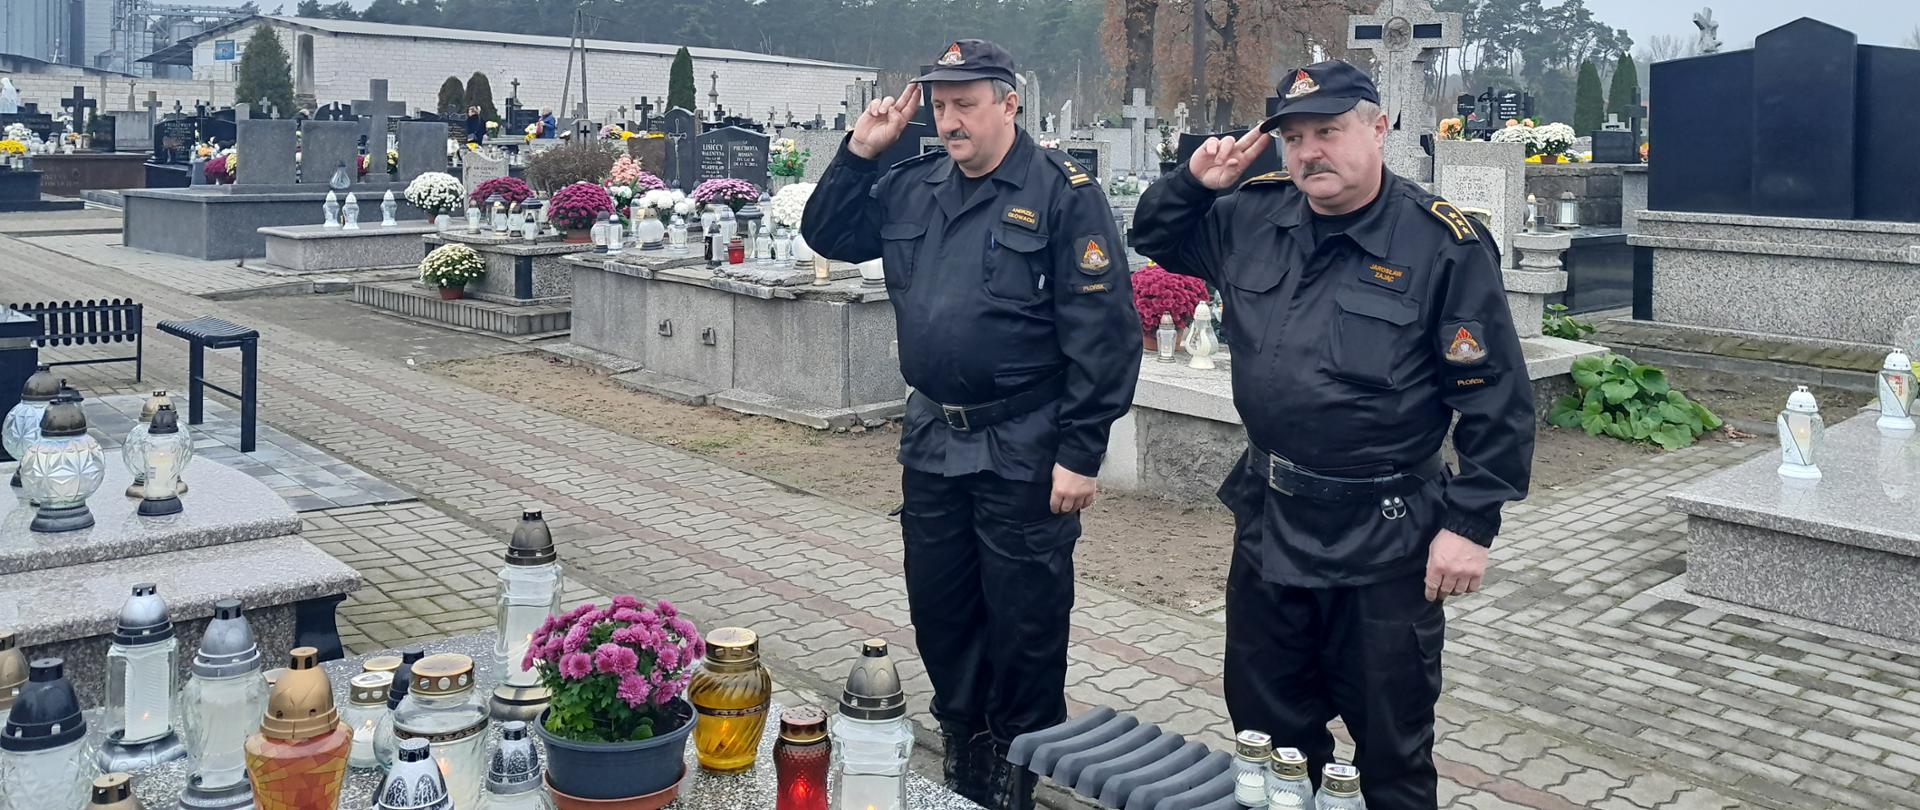 Dwóch strażaków w czarnych ubraniach dowódczo-sztabowych oddaje honor na cmentarzu, przed grobem na którym ustawione są znicza oraz kwiaty.